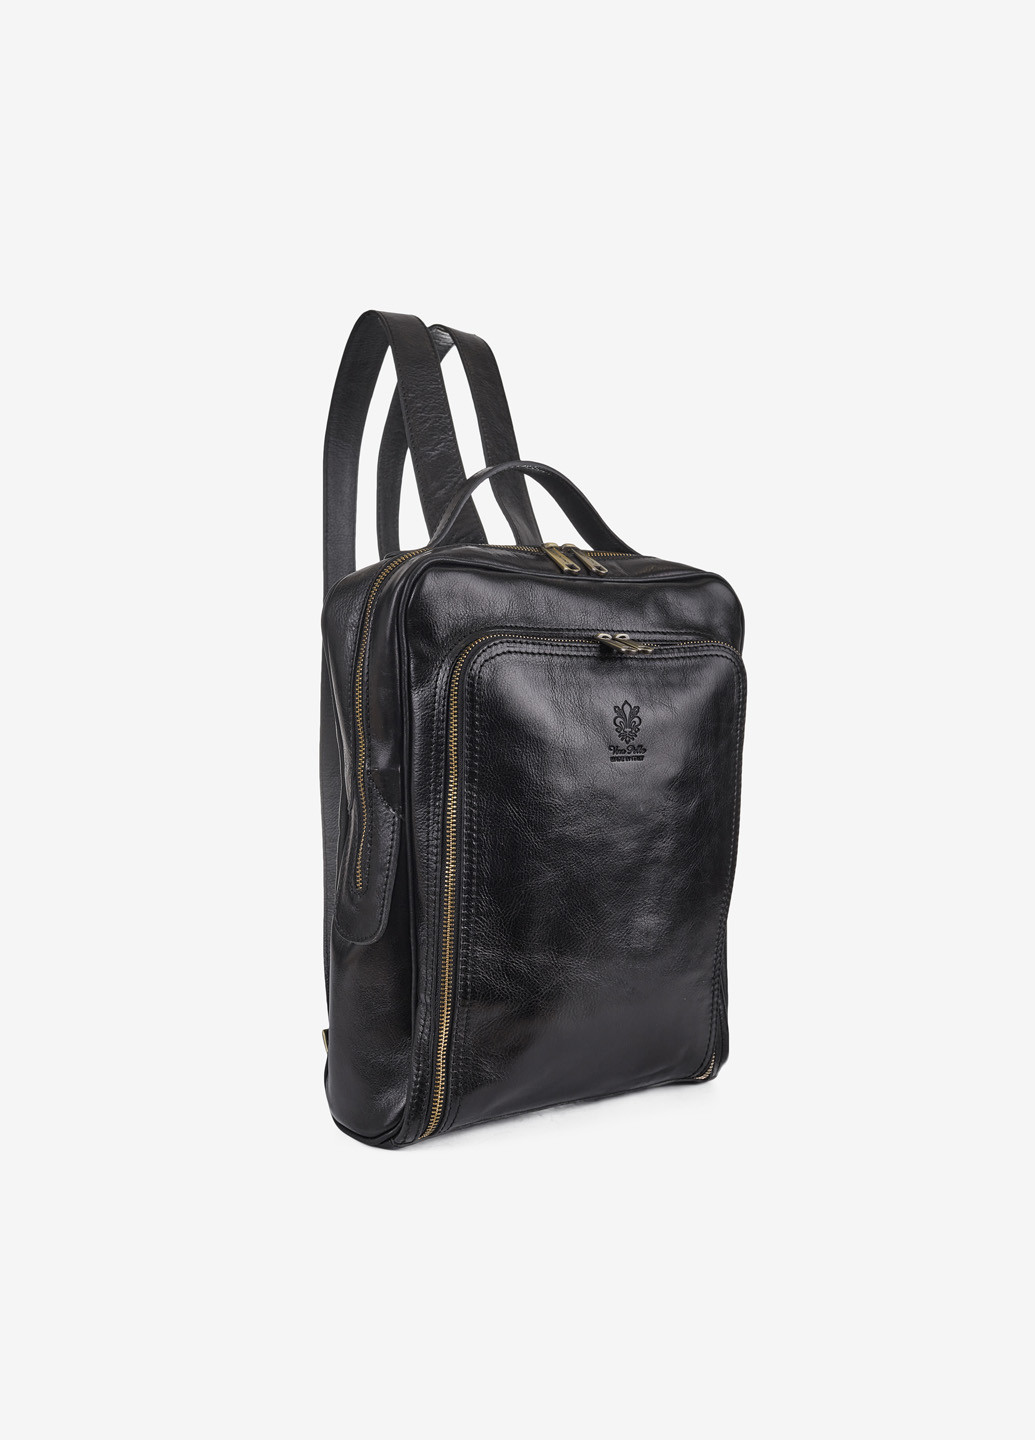 Рюкзак мужской кожаный большой InBag Backpack InBag Shop (257202394)